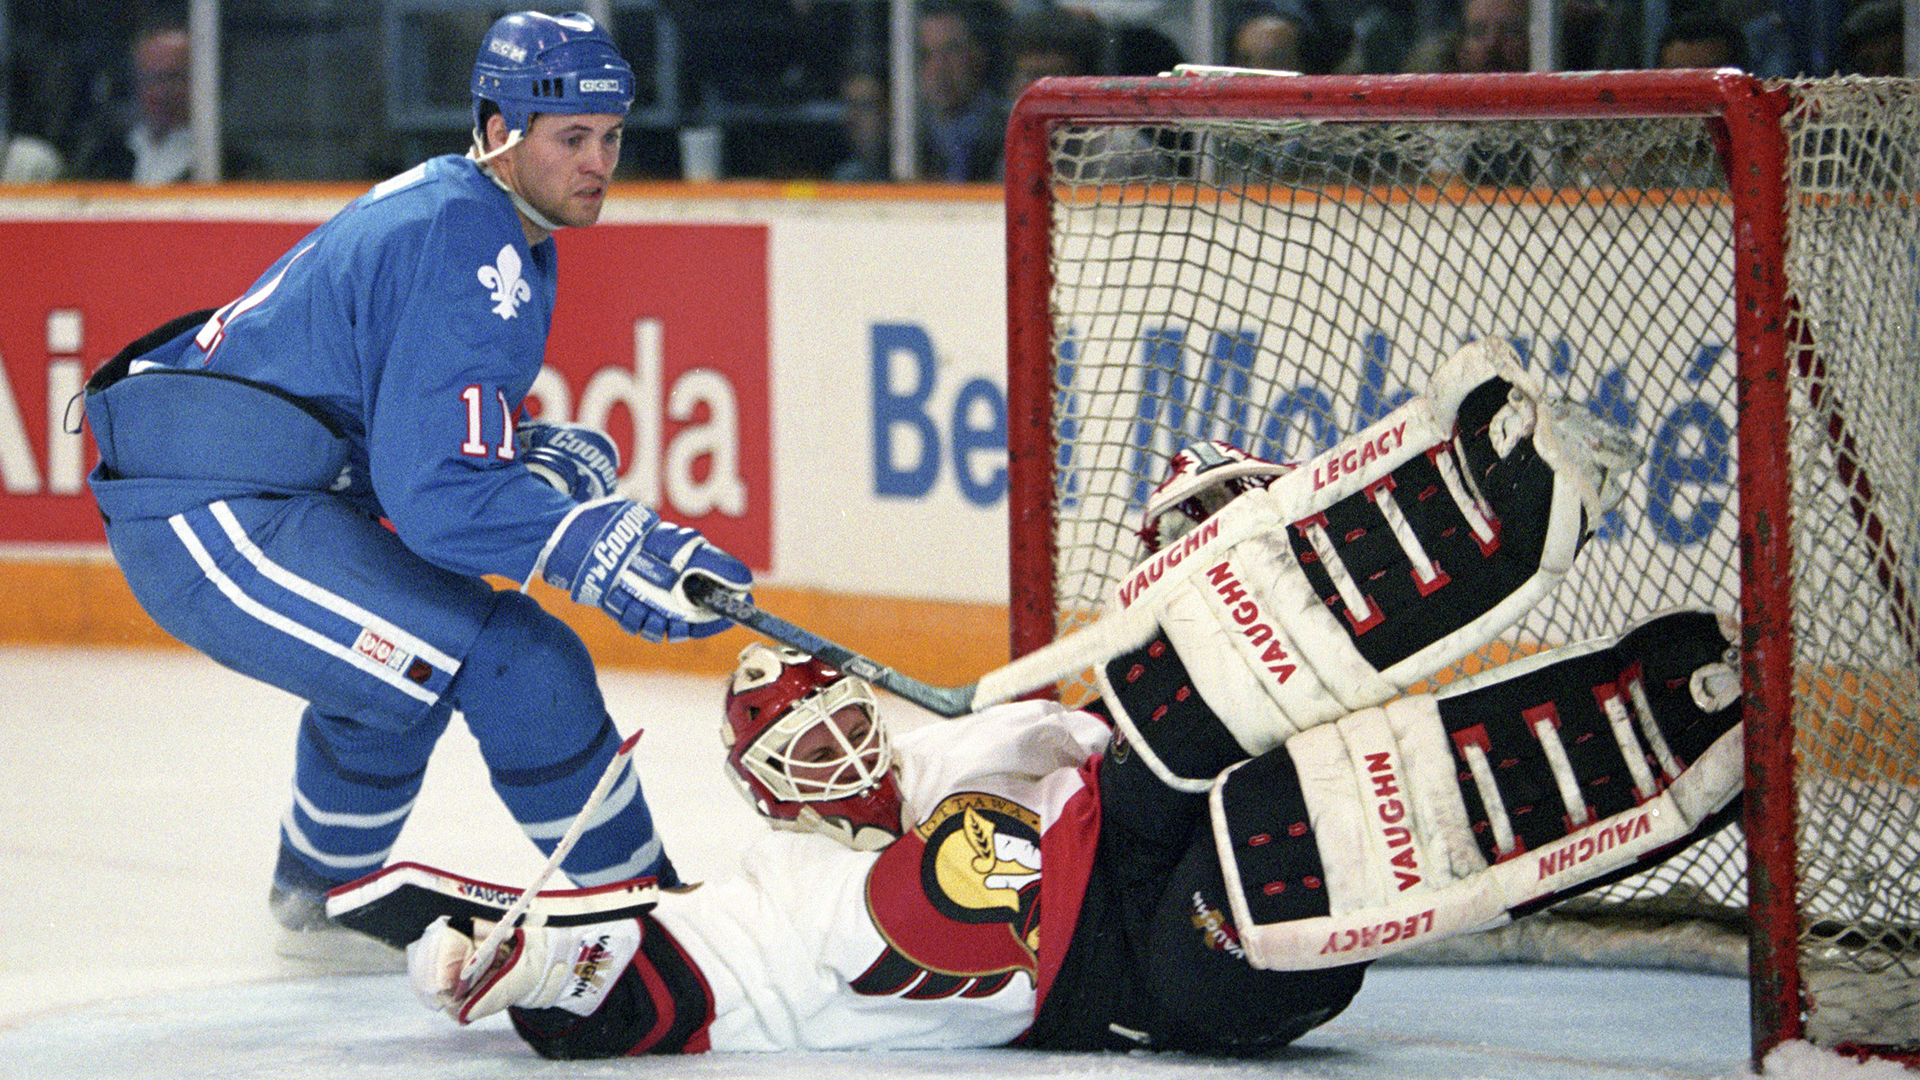 Le gardien des Sénateurs d'Ottawa, Craig Billington, effectue un arrêt sur le joueur des Nordiques de Québec, Owen Nolan, lors de la première période d'un match de la LNH à Ottawa le 6 octobre 1993.